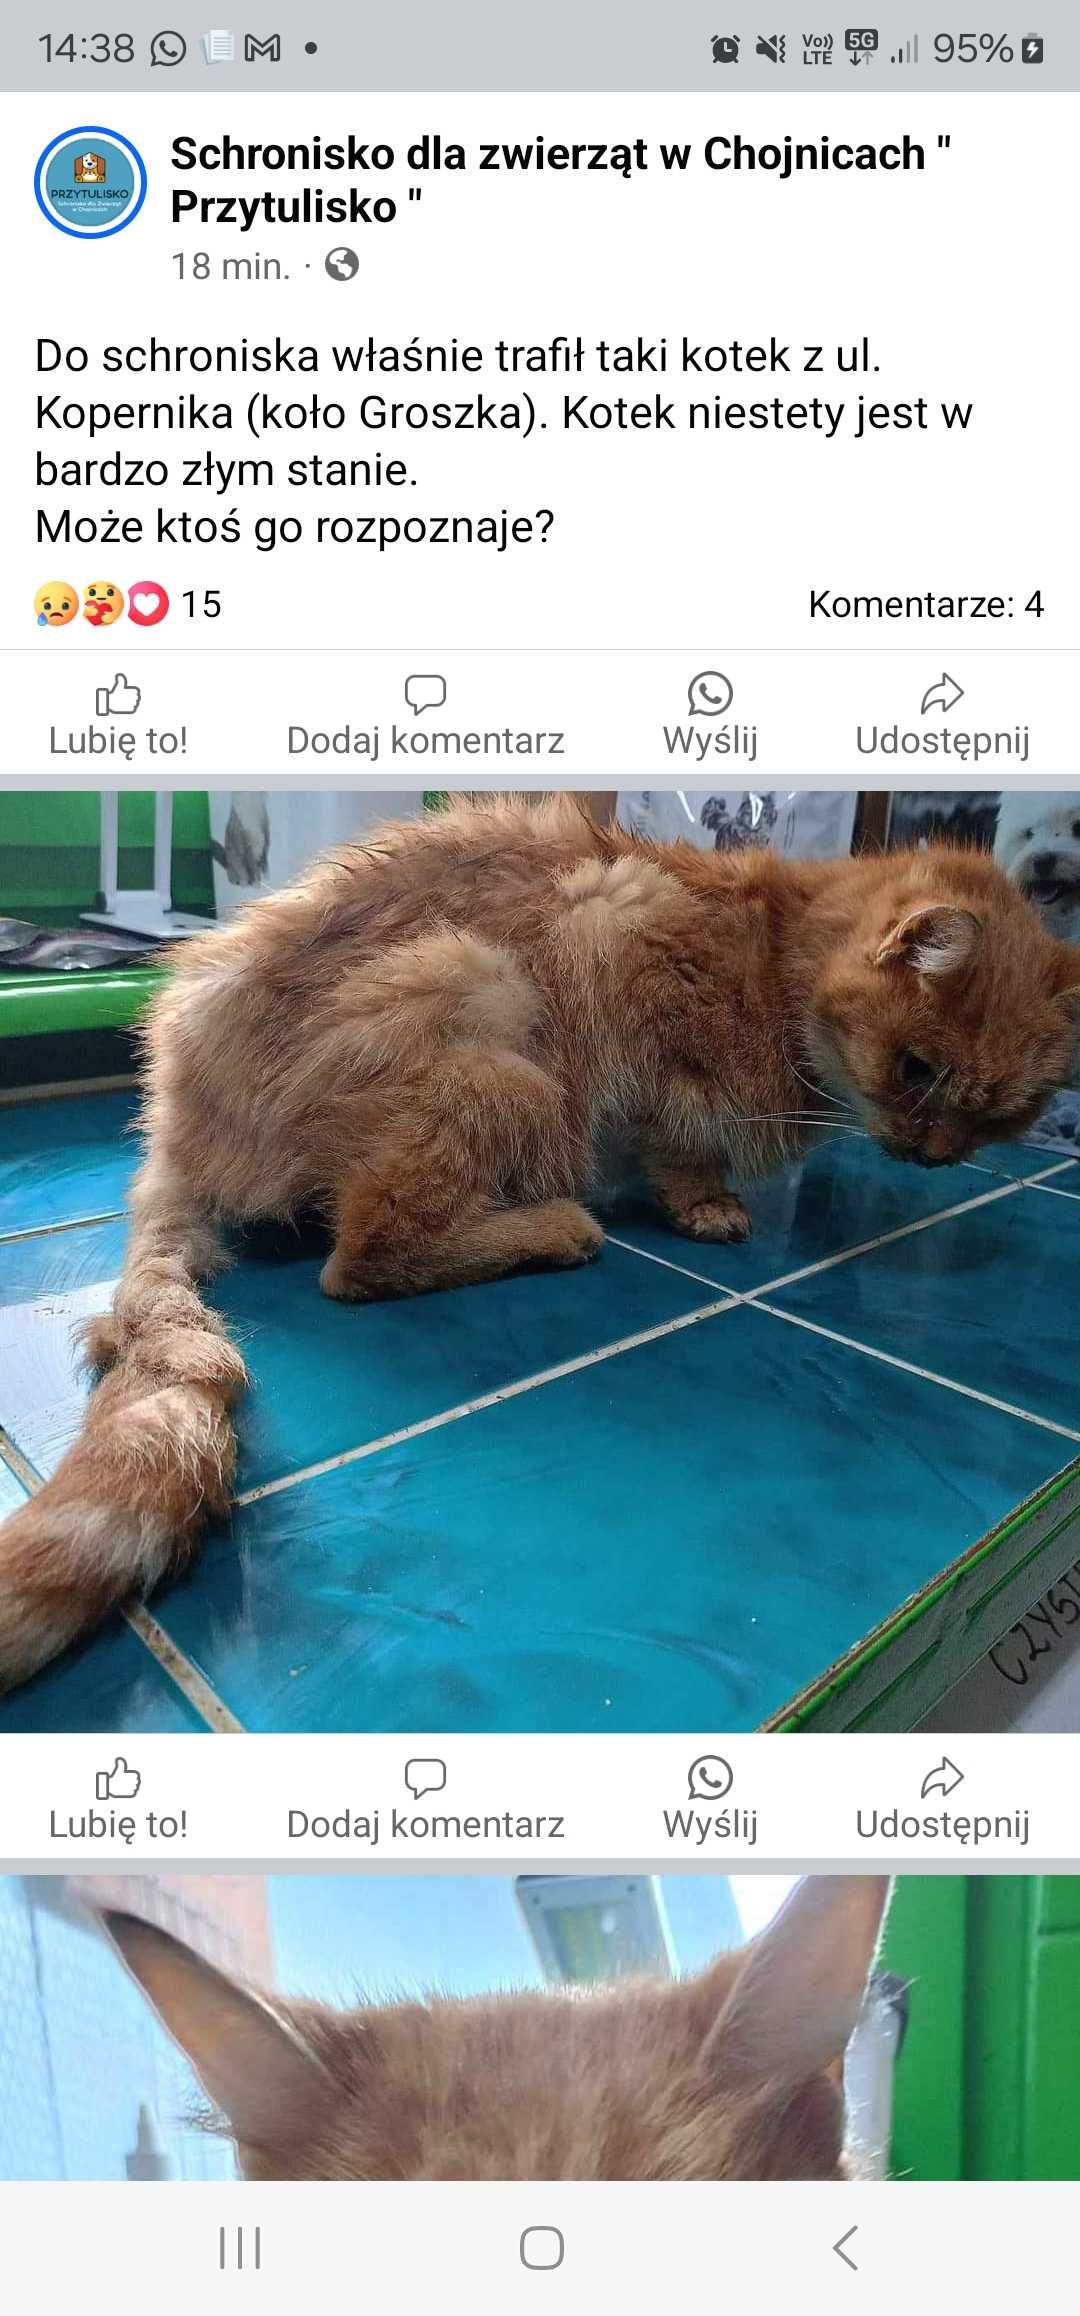 Kot znaleziony w chojnicach